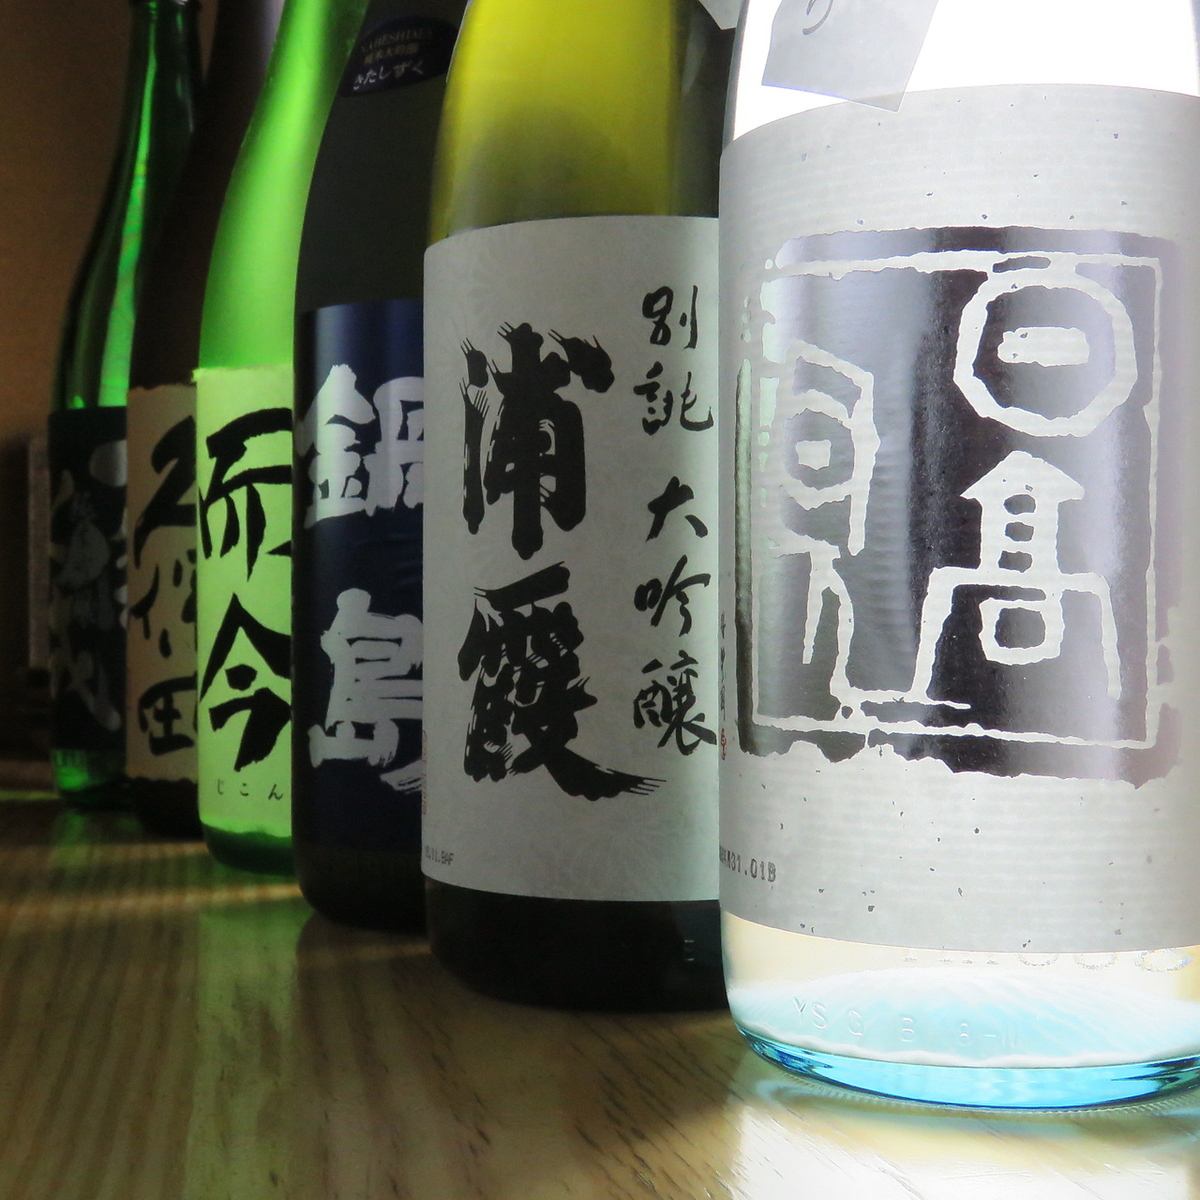 有很多正宗的日本蒸餾酒/當地清酒等庫存！